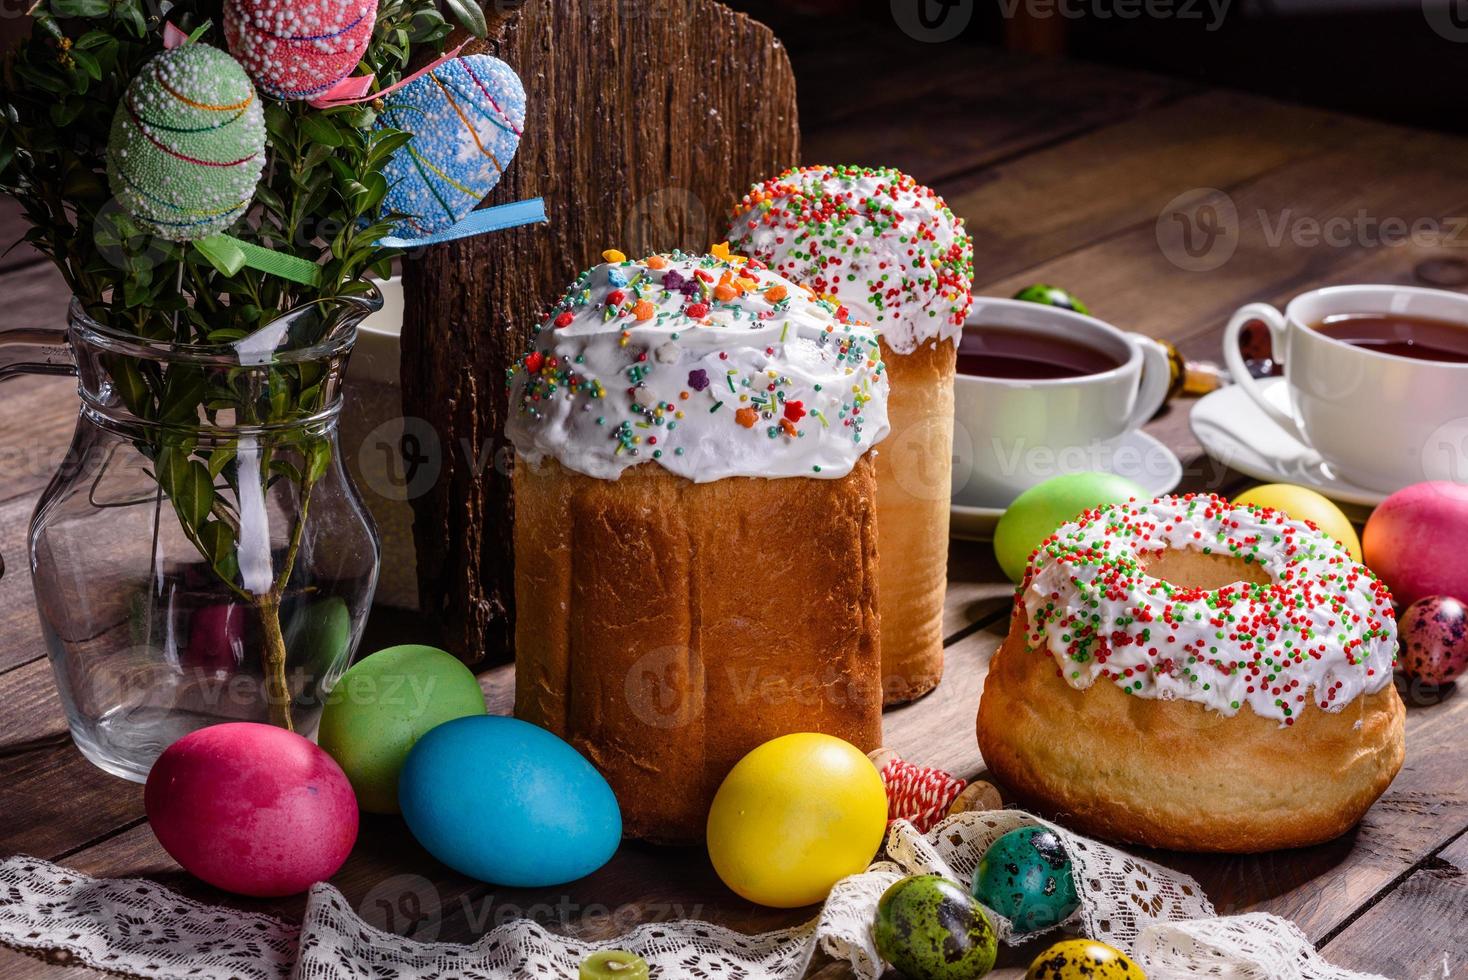 bolo de páscoa e ovos coloridos em um fundo escuro foto